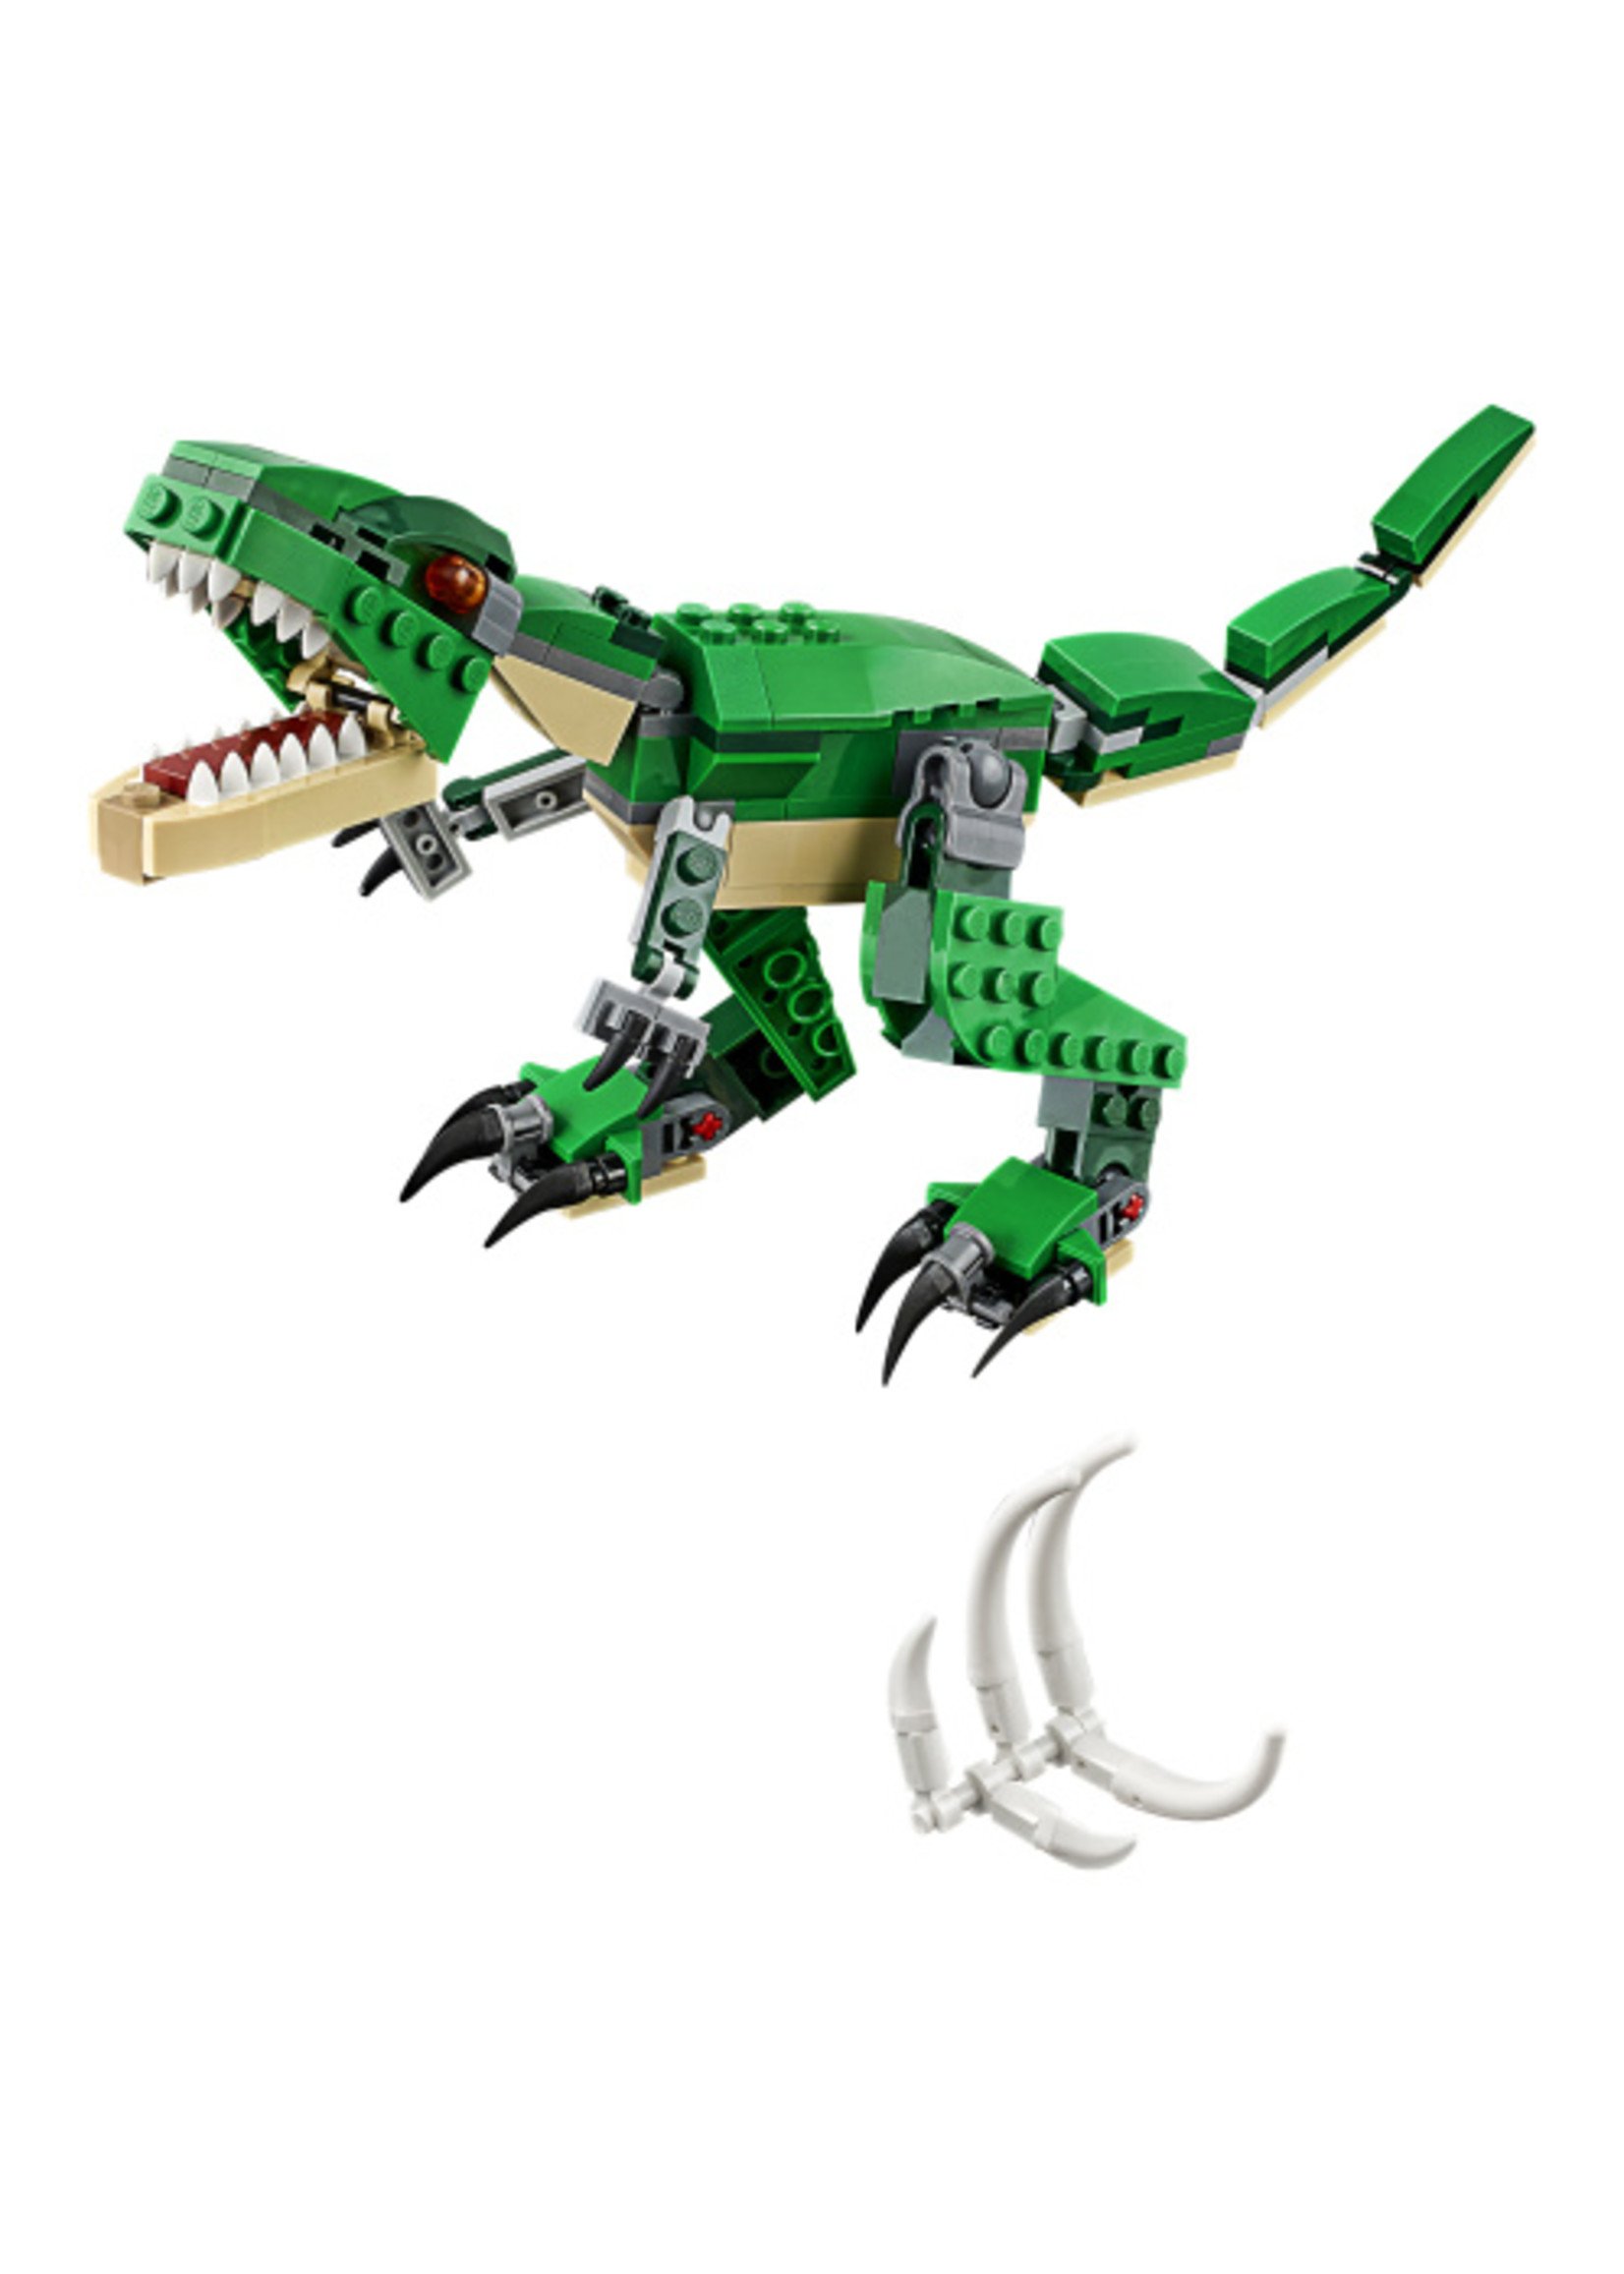 LEGO 31058 - Mighty Dinosaurs